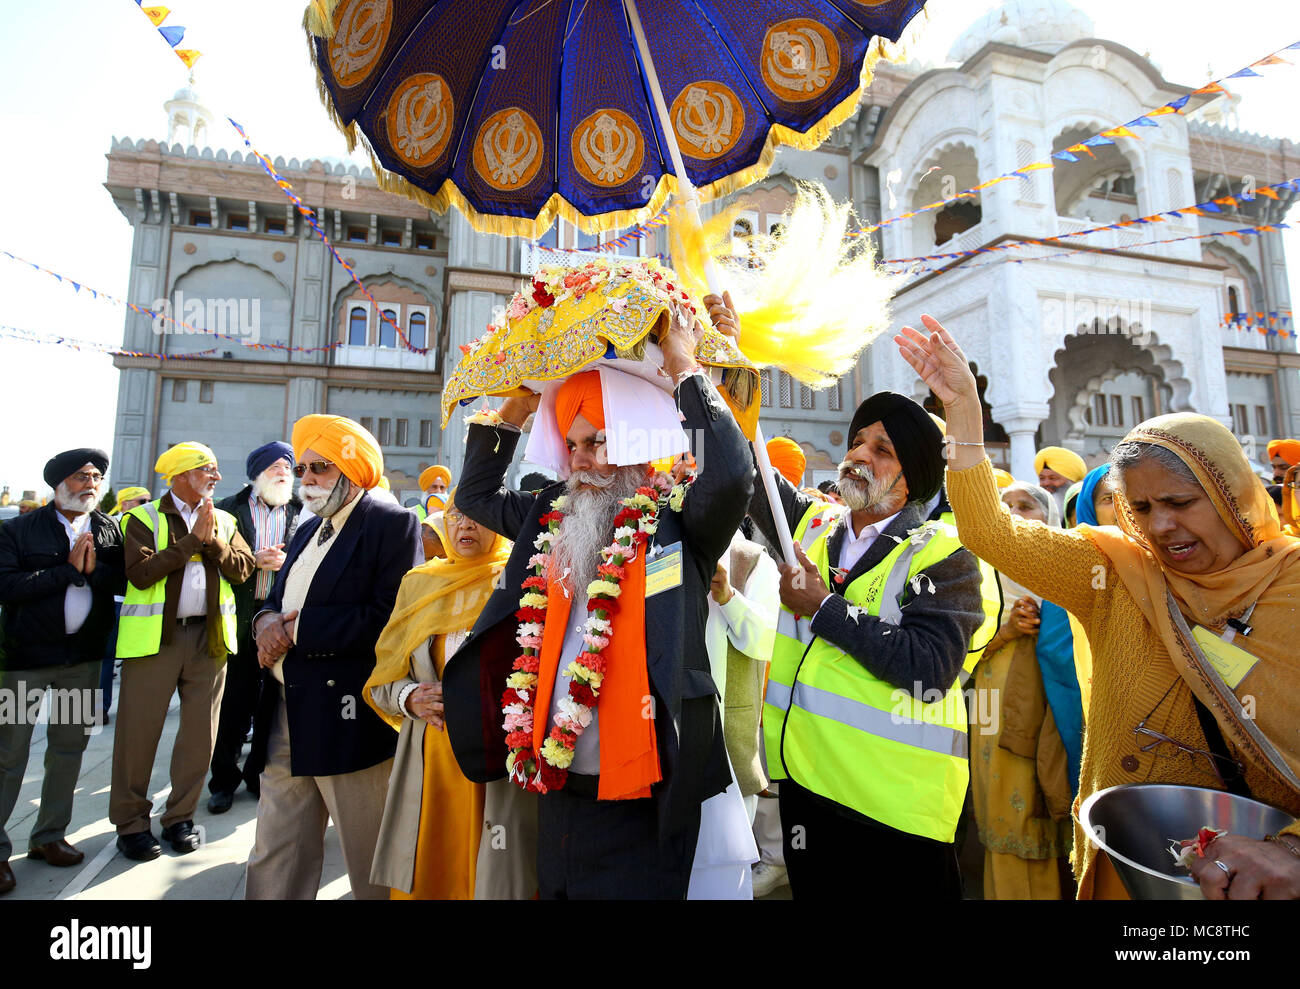 Il Guru Granth Sahib i sikh libro sacro, è portato dal Guru Nanak Gurdwara Darbar tempio durante il Nagar Kirtan processione attraverso Anzio, che fa parte del festival Sikh Vaisakhi segnando il raccolto primaverile per gli agricoltori e le comunità nel Punjab in India del nord. Foto Stock